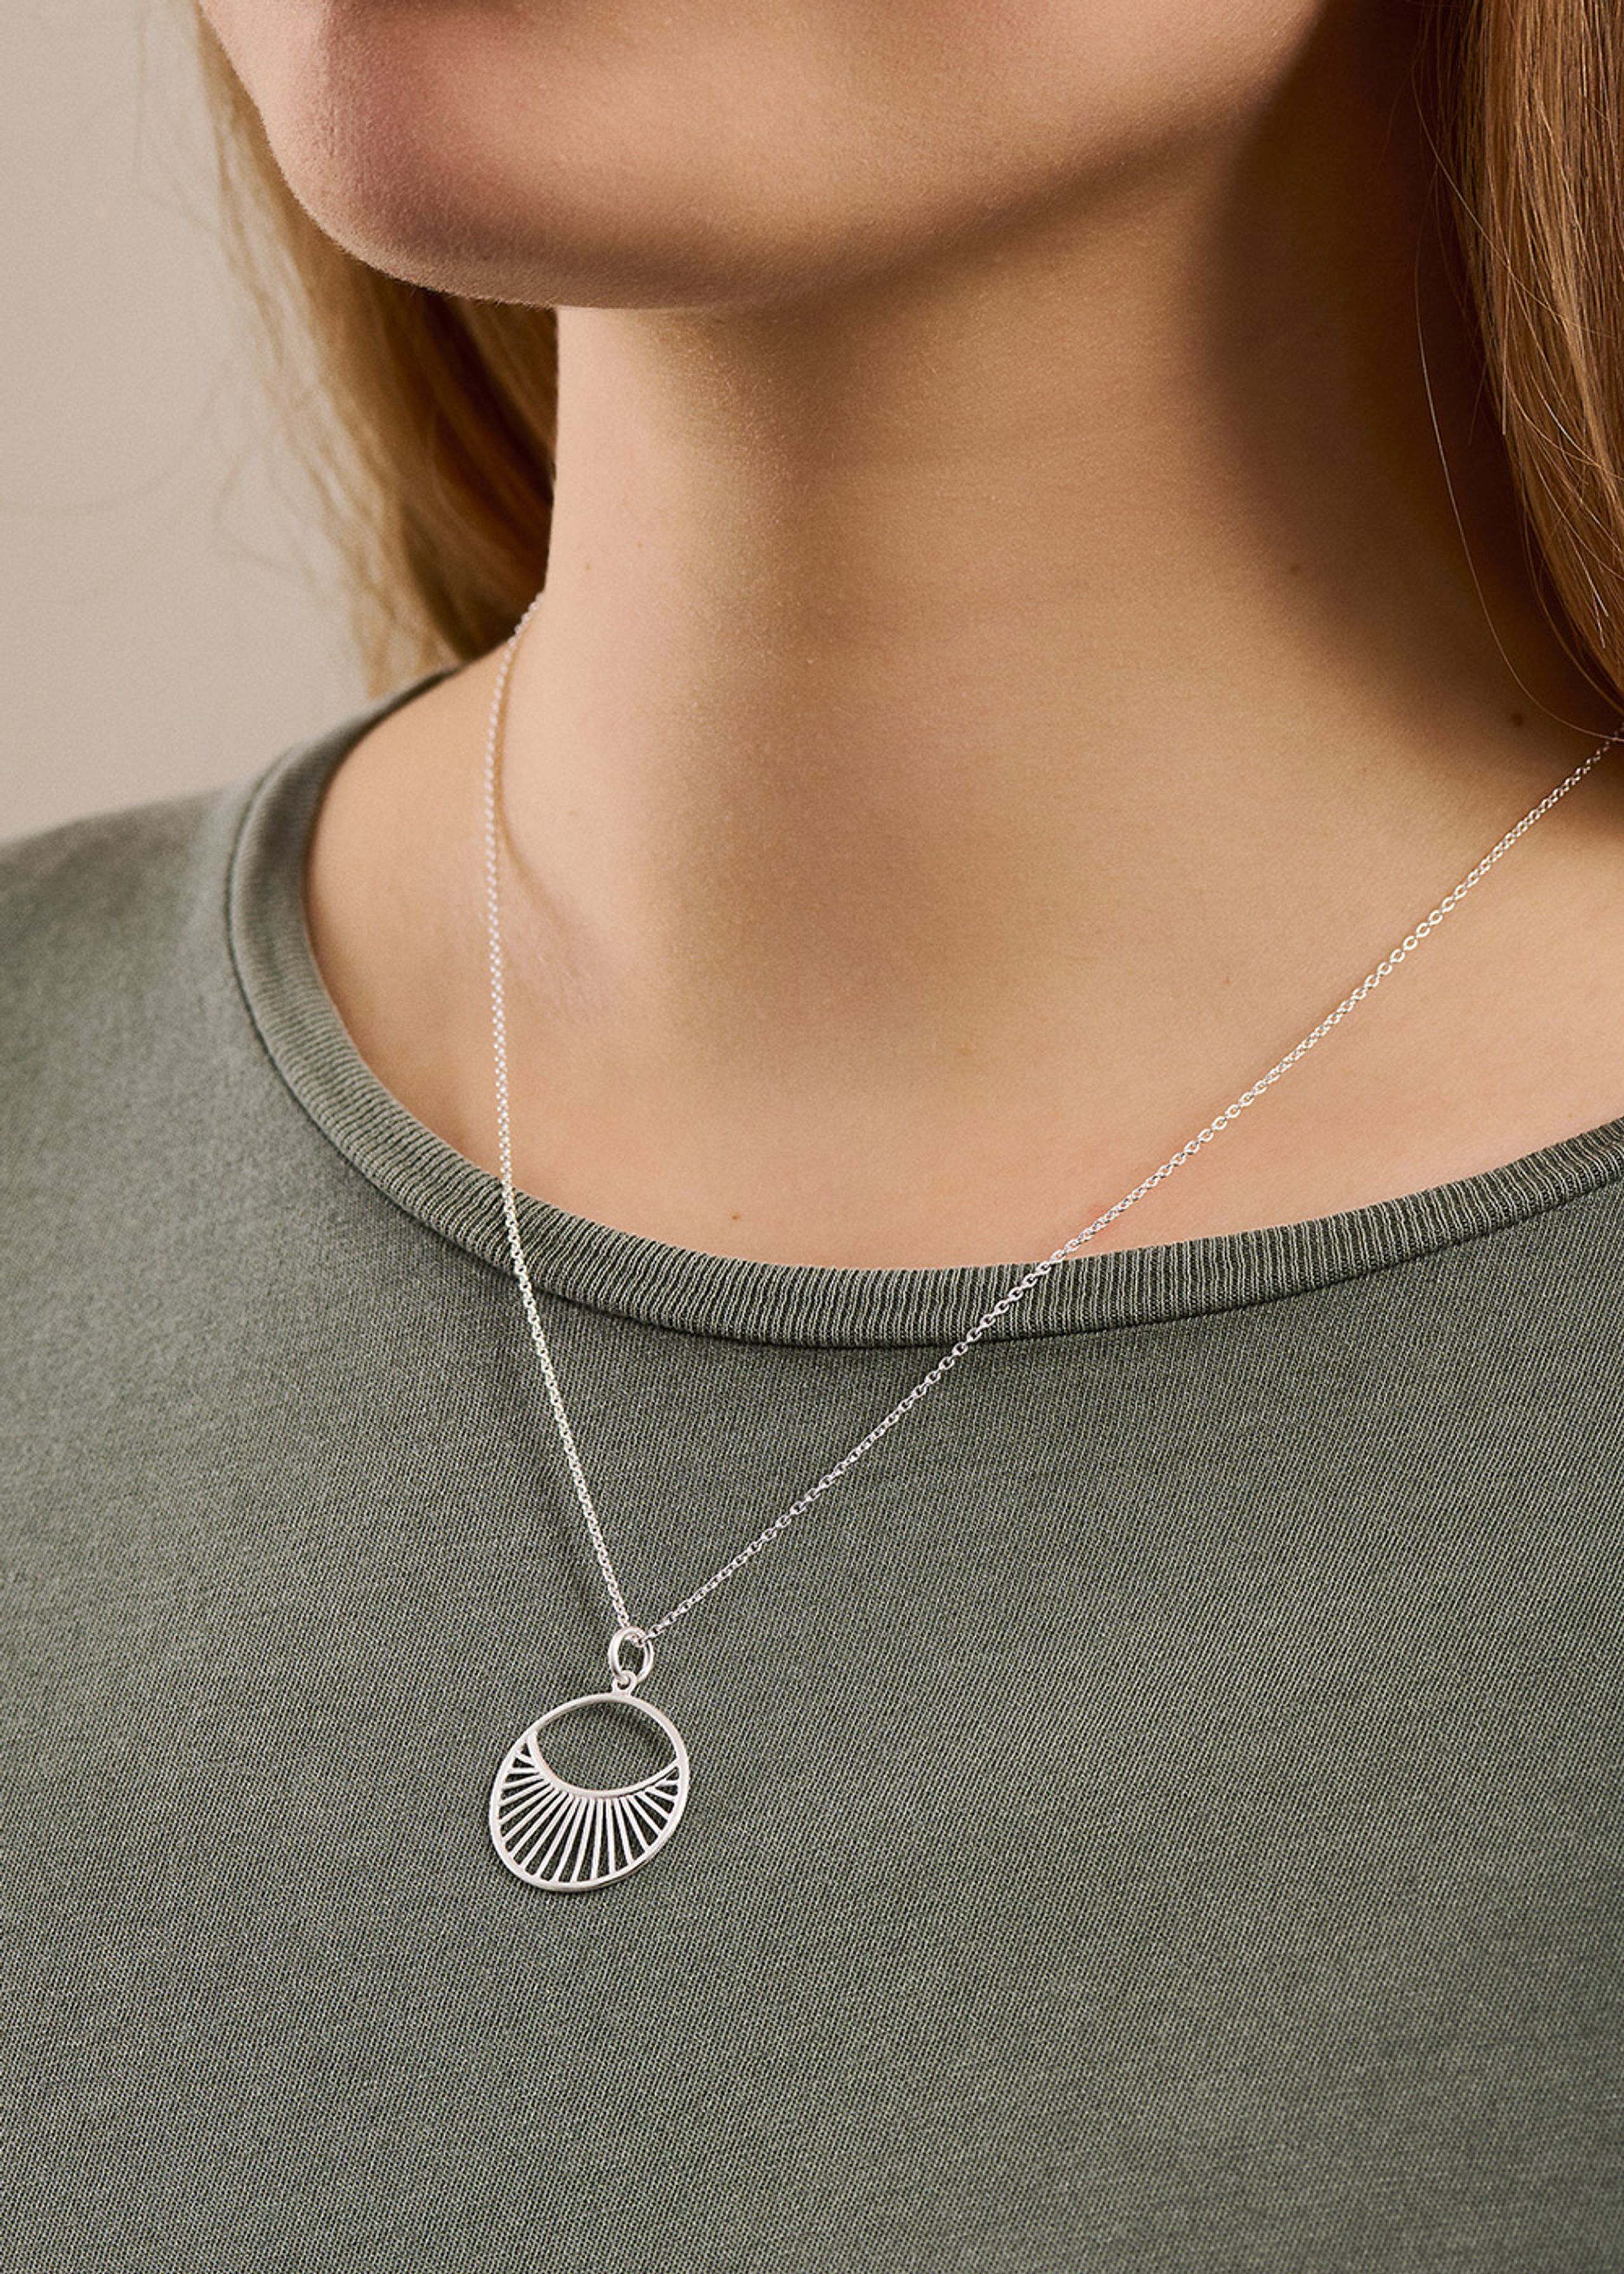 Pernille Corydon - Necklace - Daylight Necklace Short - Silver